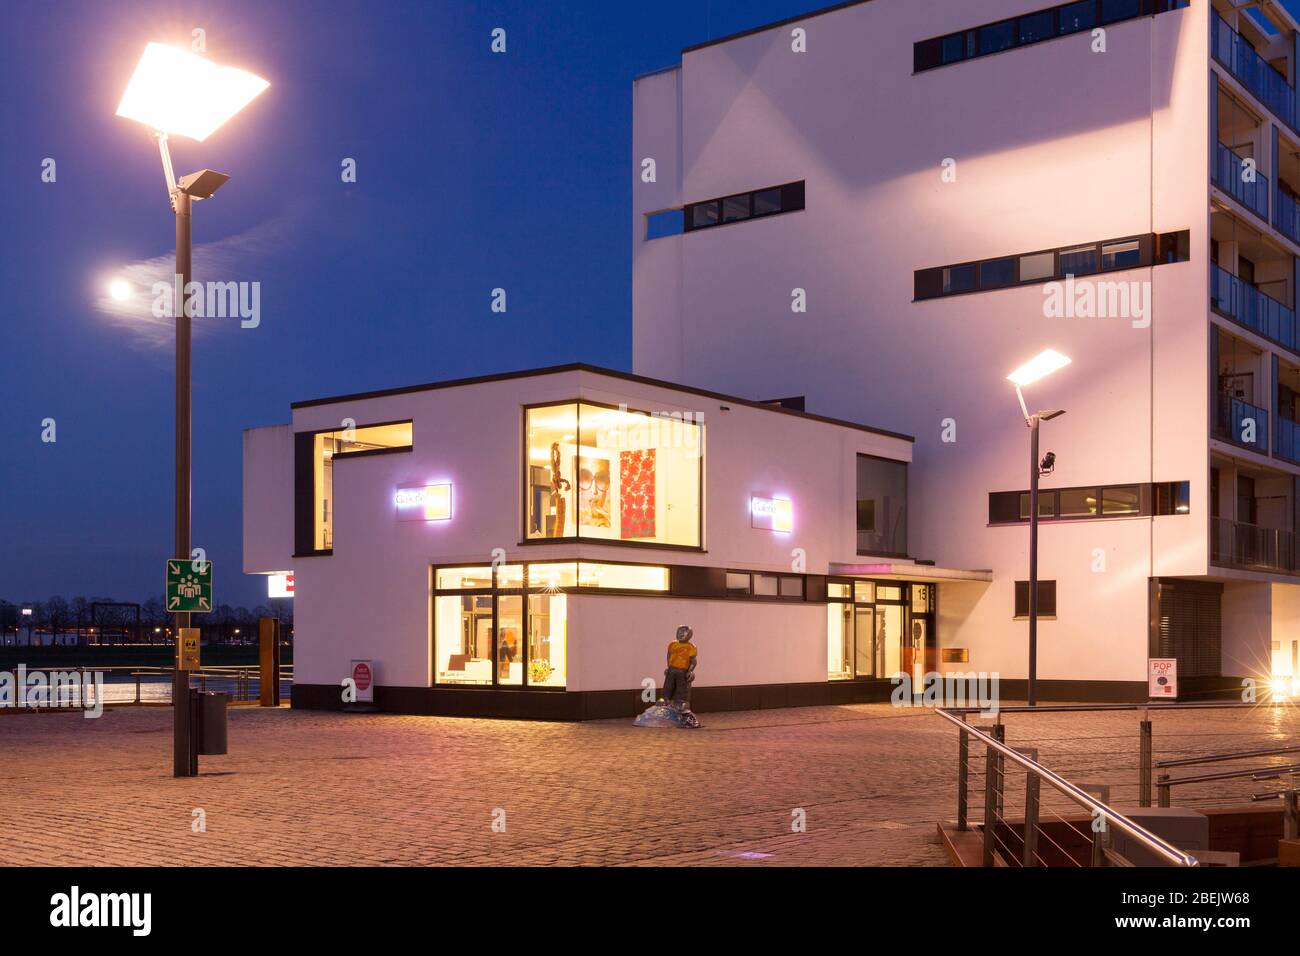 La galerie d'art Reitz dans le port de Rheinau, Cologne, Allemagne. Die Kunstgalerie Reitz im Rheinauhafen, Koeln, Deutschland. Banque D'Images